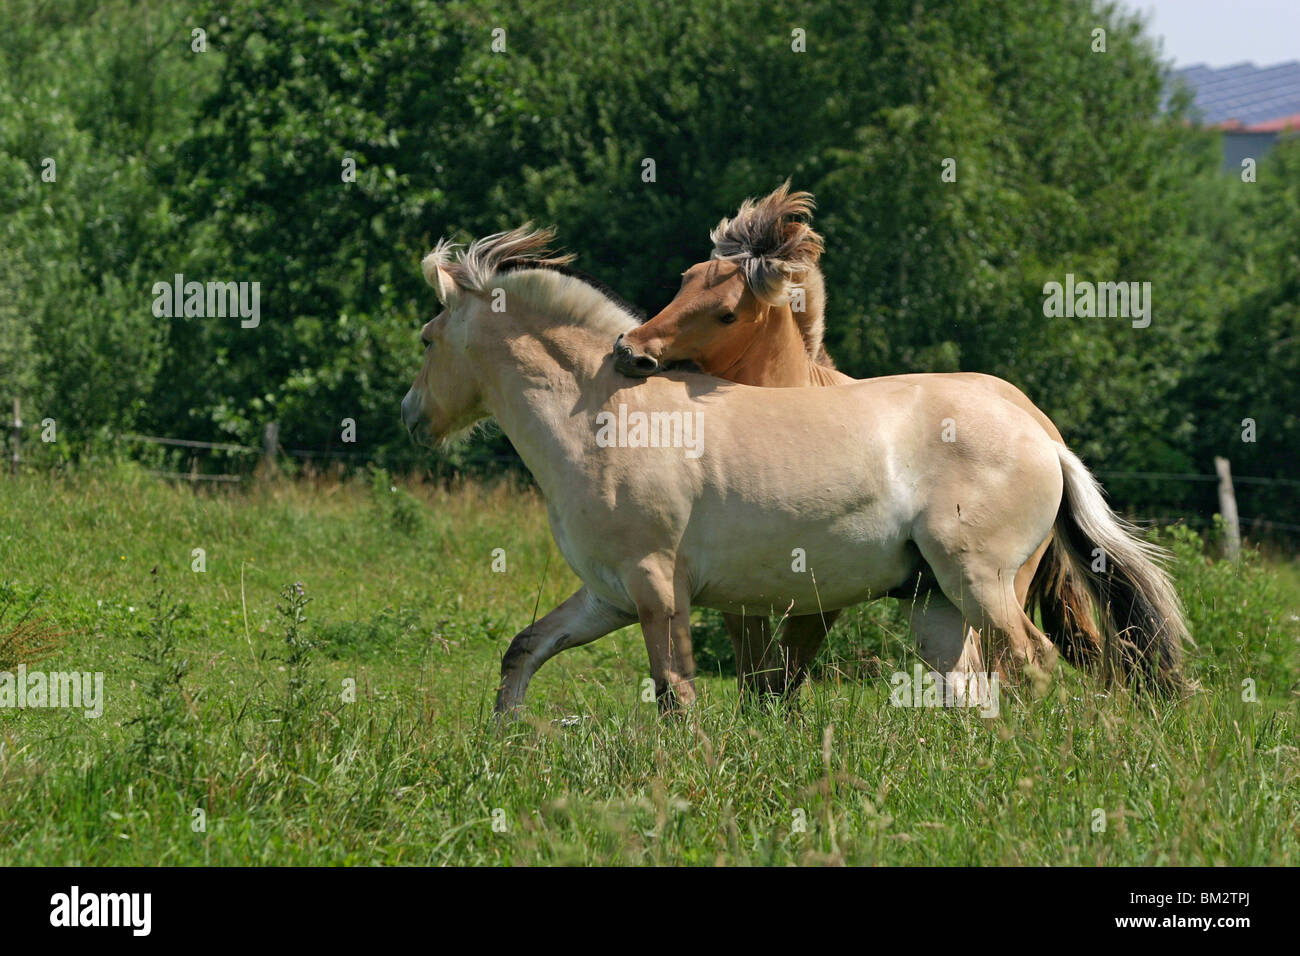 Spielerischer Kampf / deux jeunes chevaux Banque D'Images